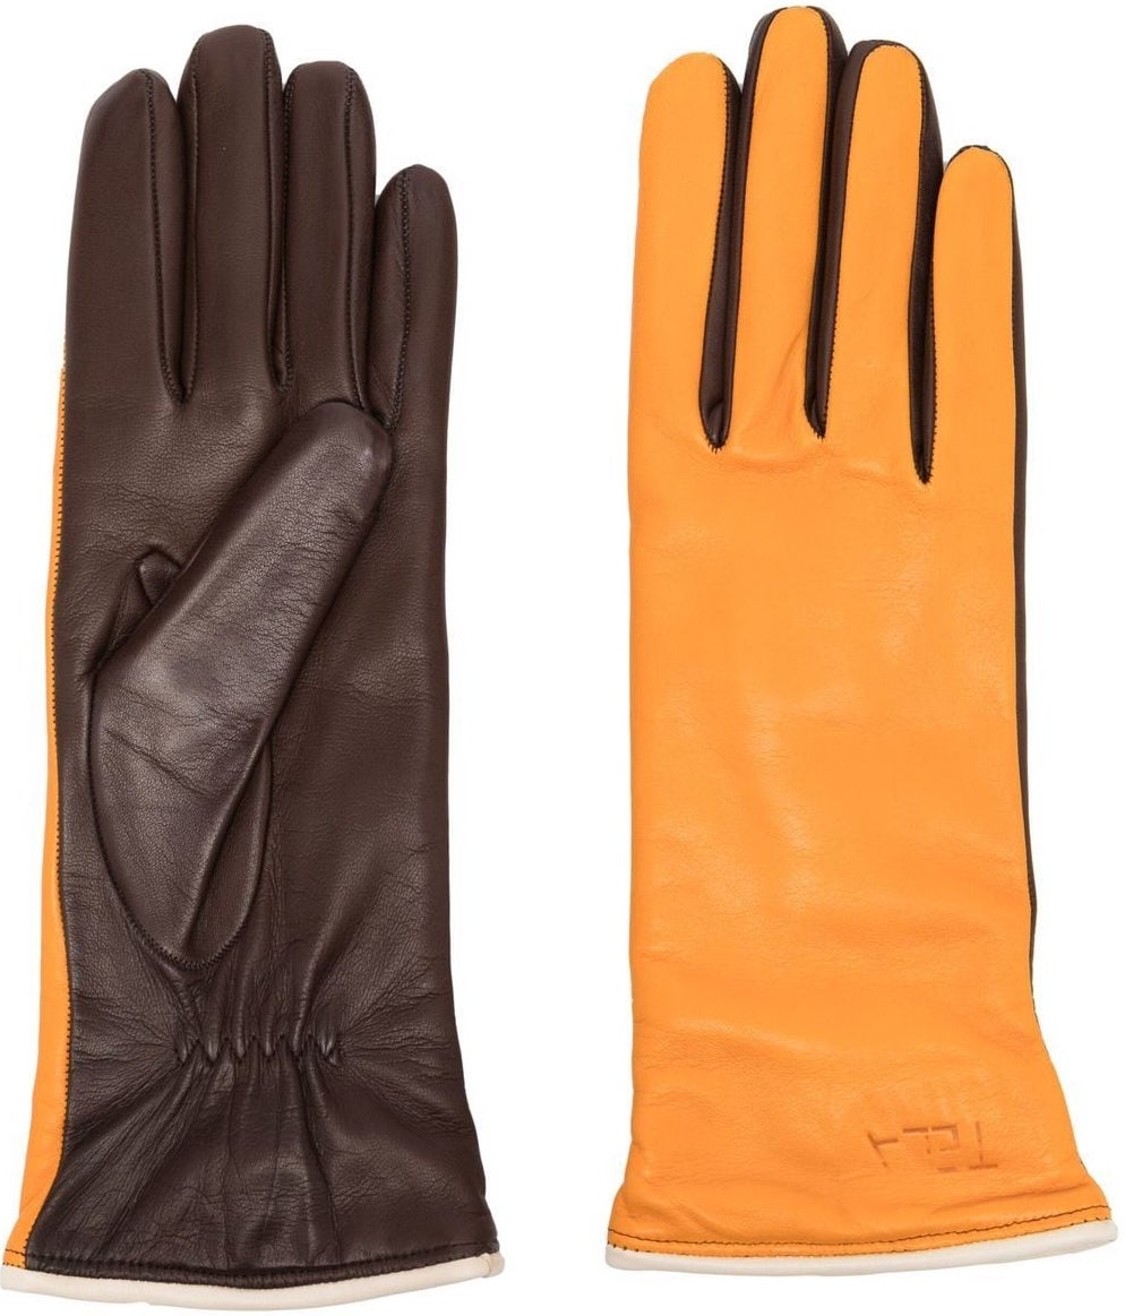 shop Tela  Accessori: Accessori Tela, guanti in pelle multicolore: arancione e marrone.

Composizione: 100% pelle. number 2476